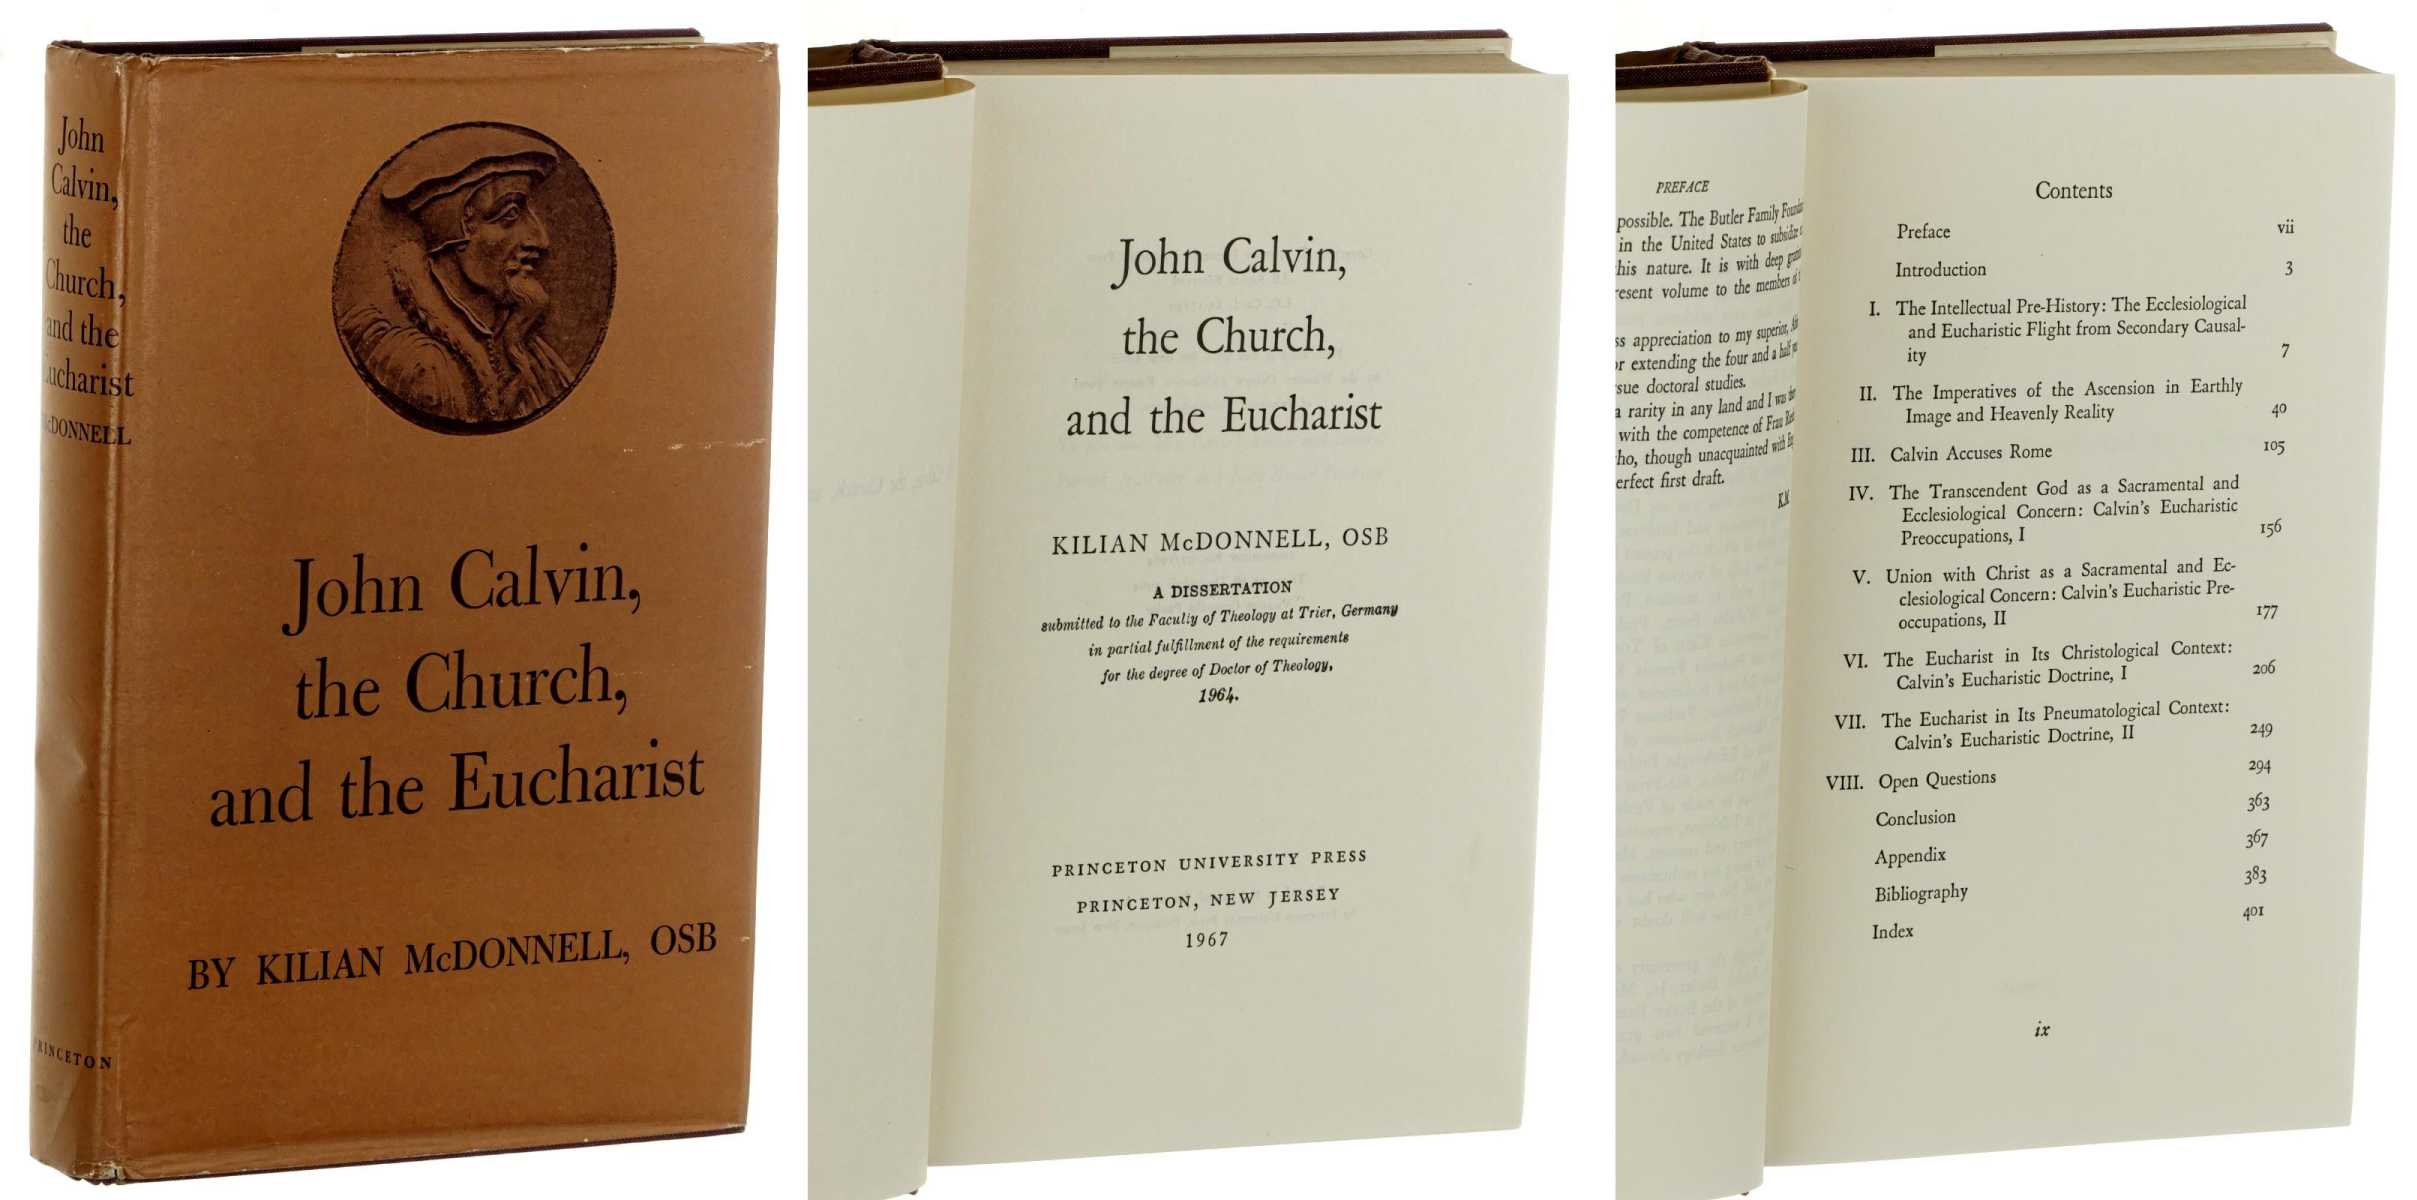 McDonnell, Kilian OSB:  John Calvin, the Church, and the Eucharist. Diss. T'rier. 